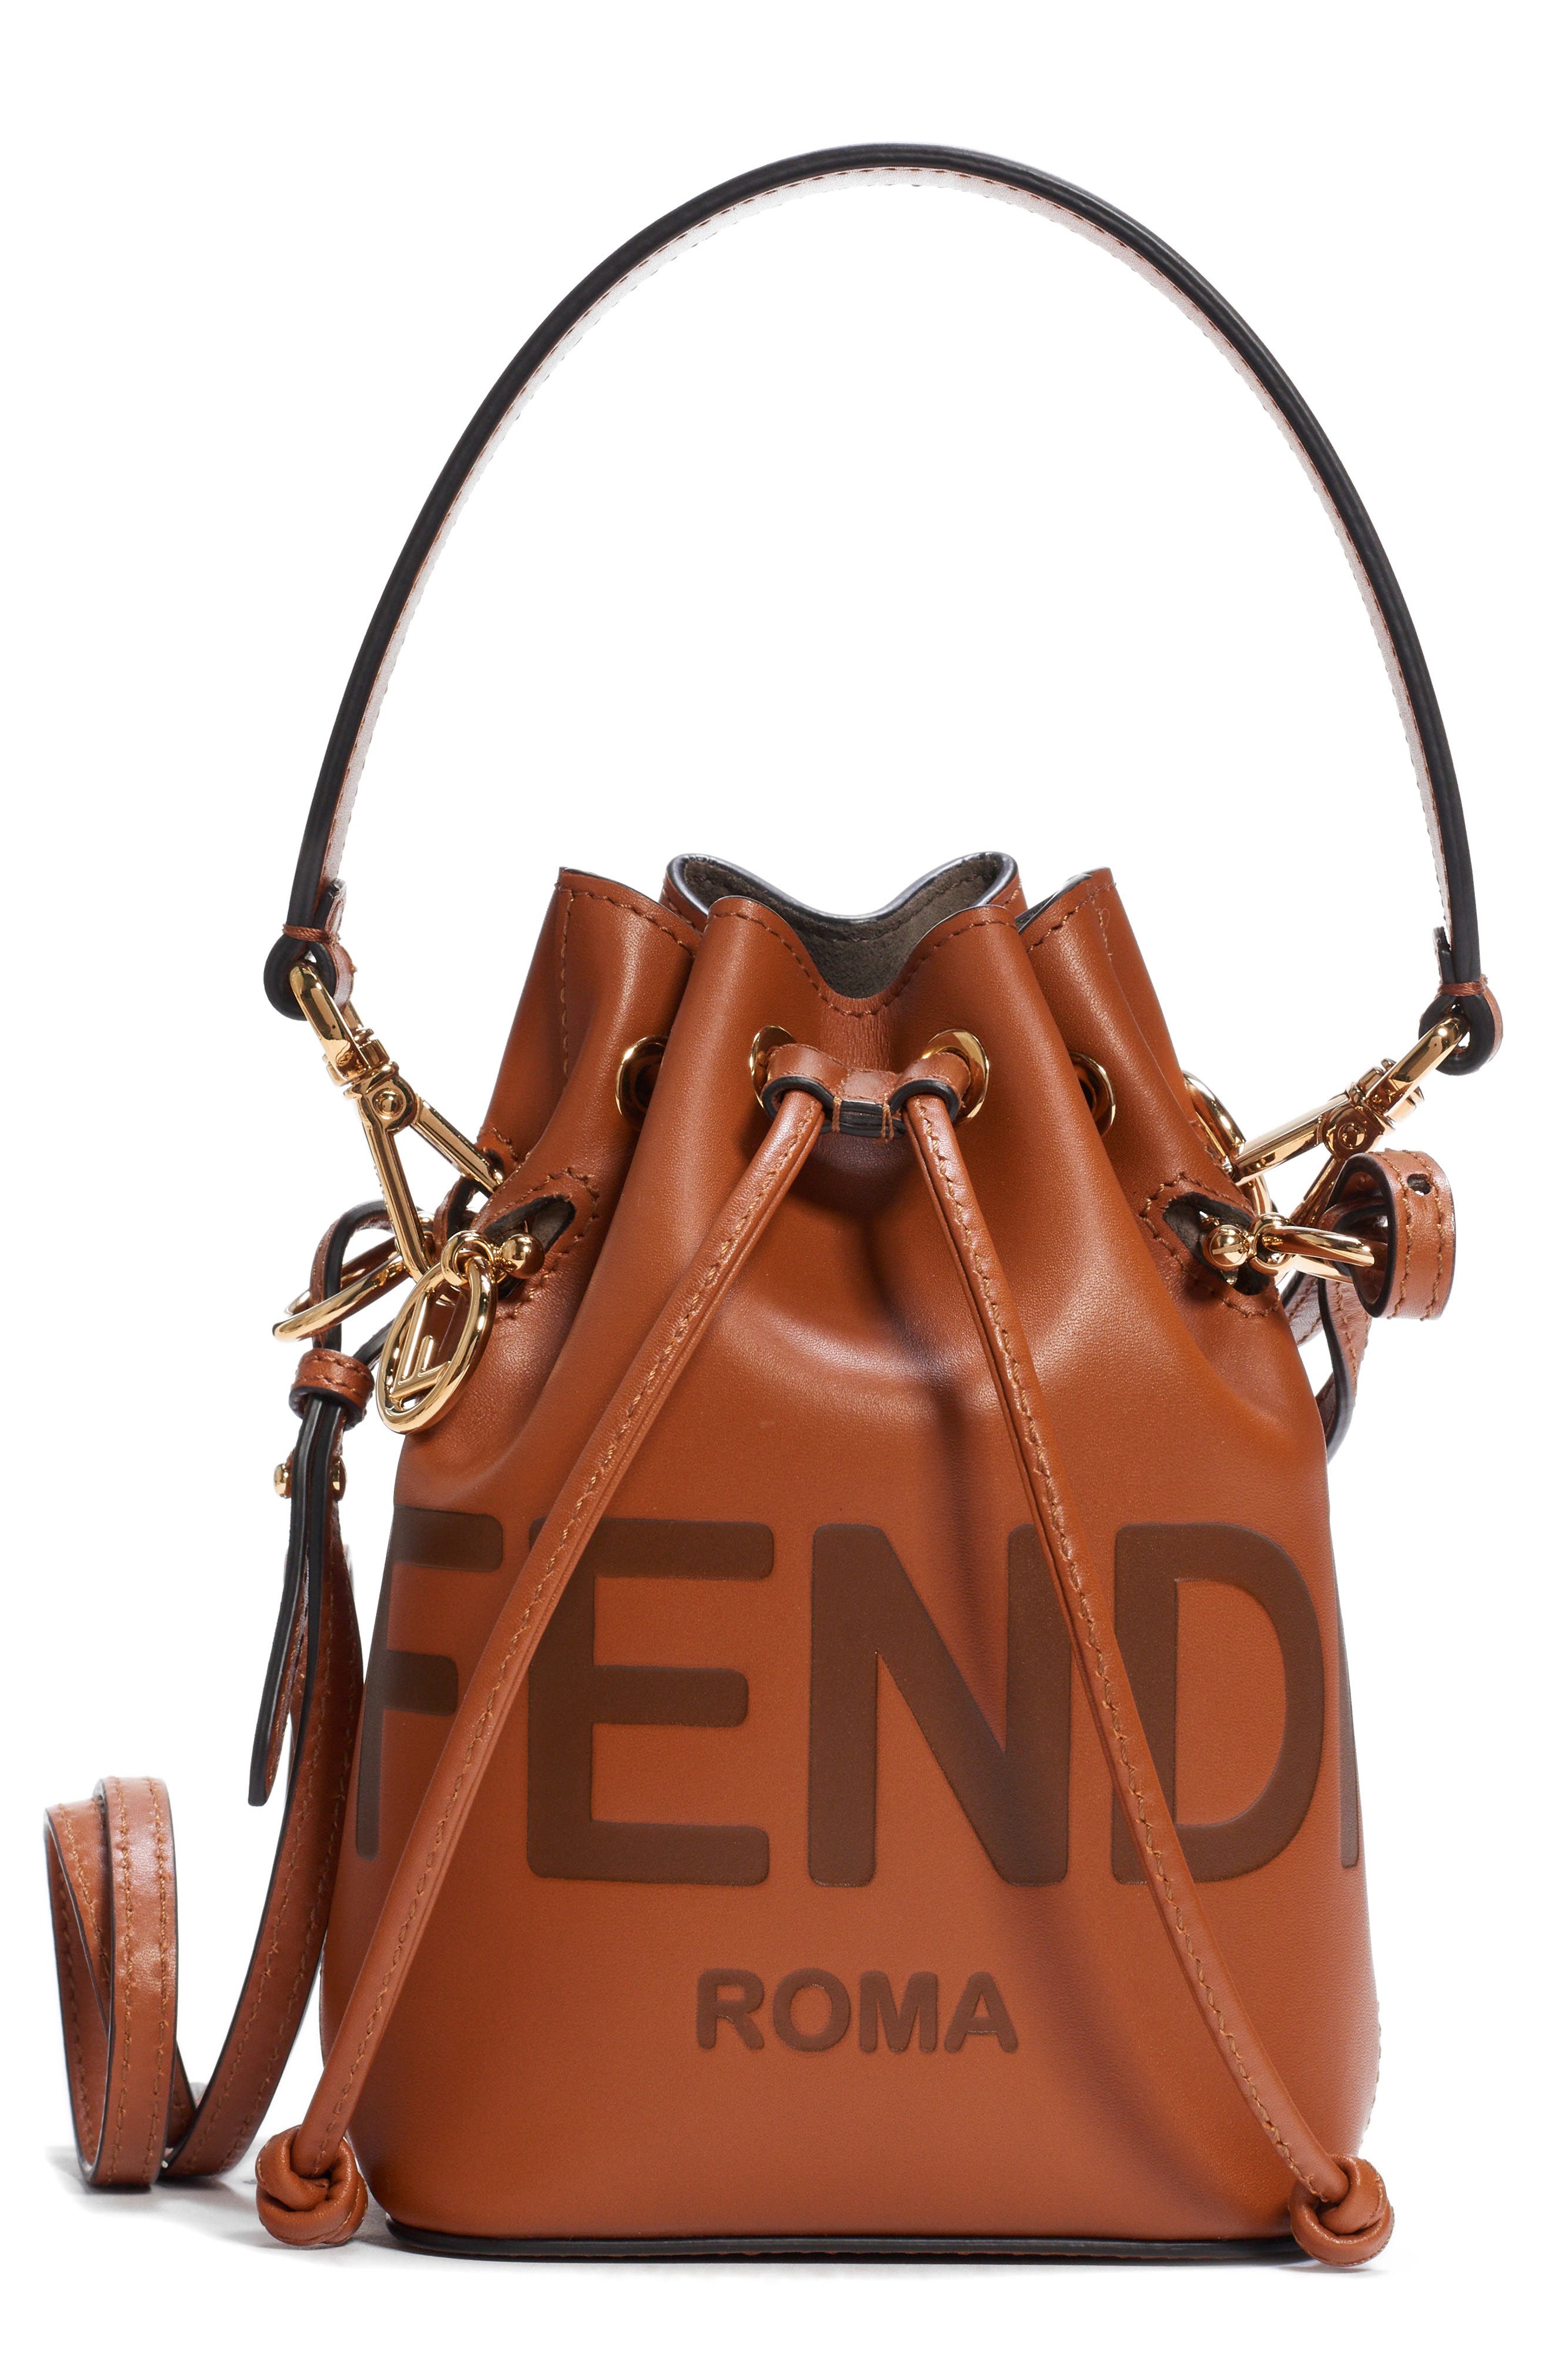 fendi handbags on sale